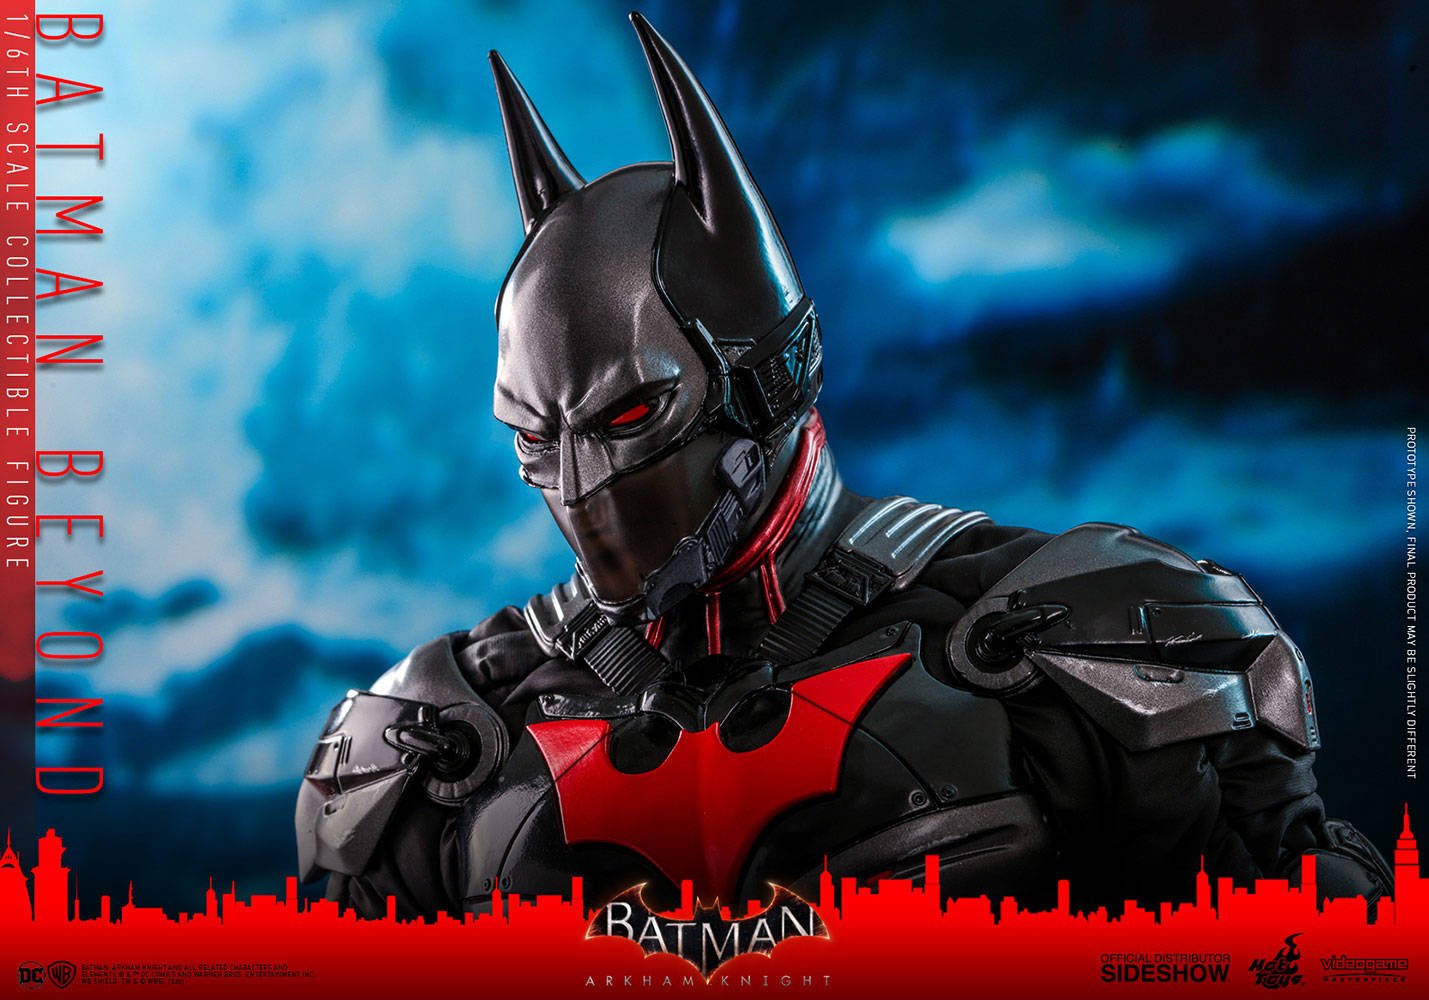 Immagine di Batman Beyond, la nuova "Sixth Scale" prodotta da Hot Toys